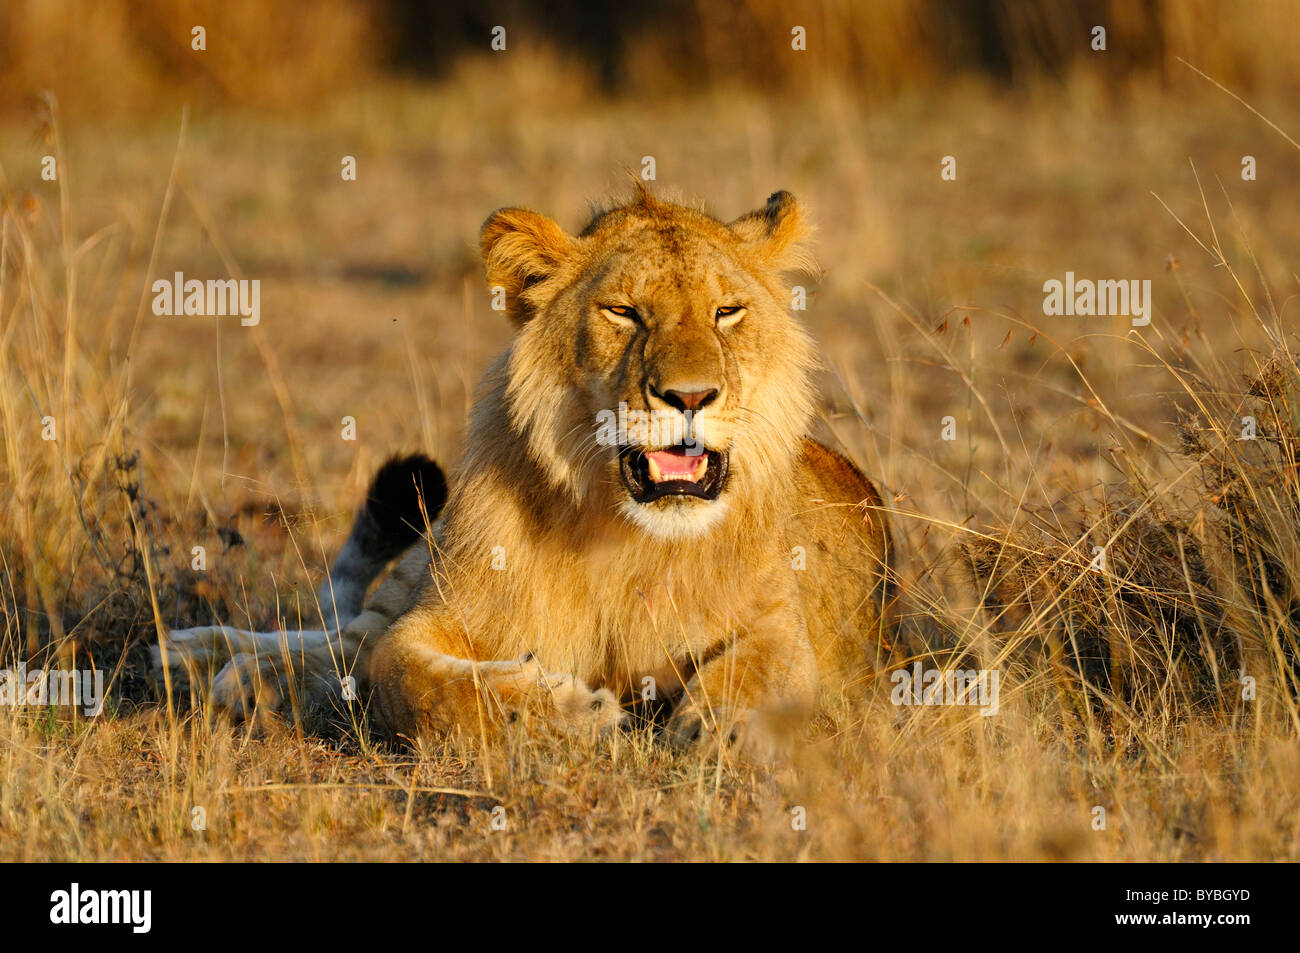 Lion (Panthera leo), jeune homme dans la lumière du matin, Masai Mara National Reserve, Kenya, Africa Banque D'Images